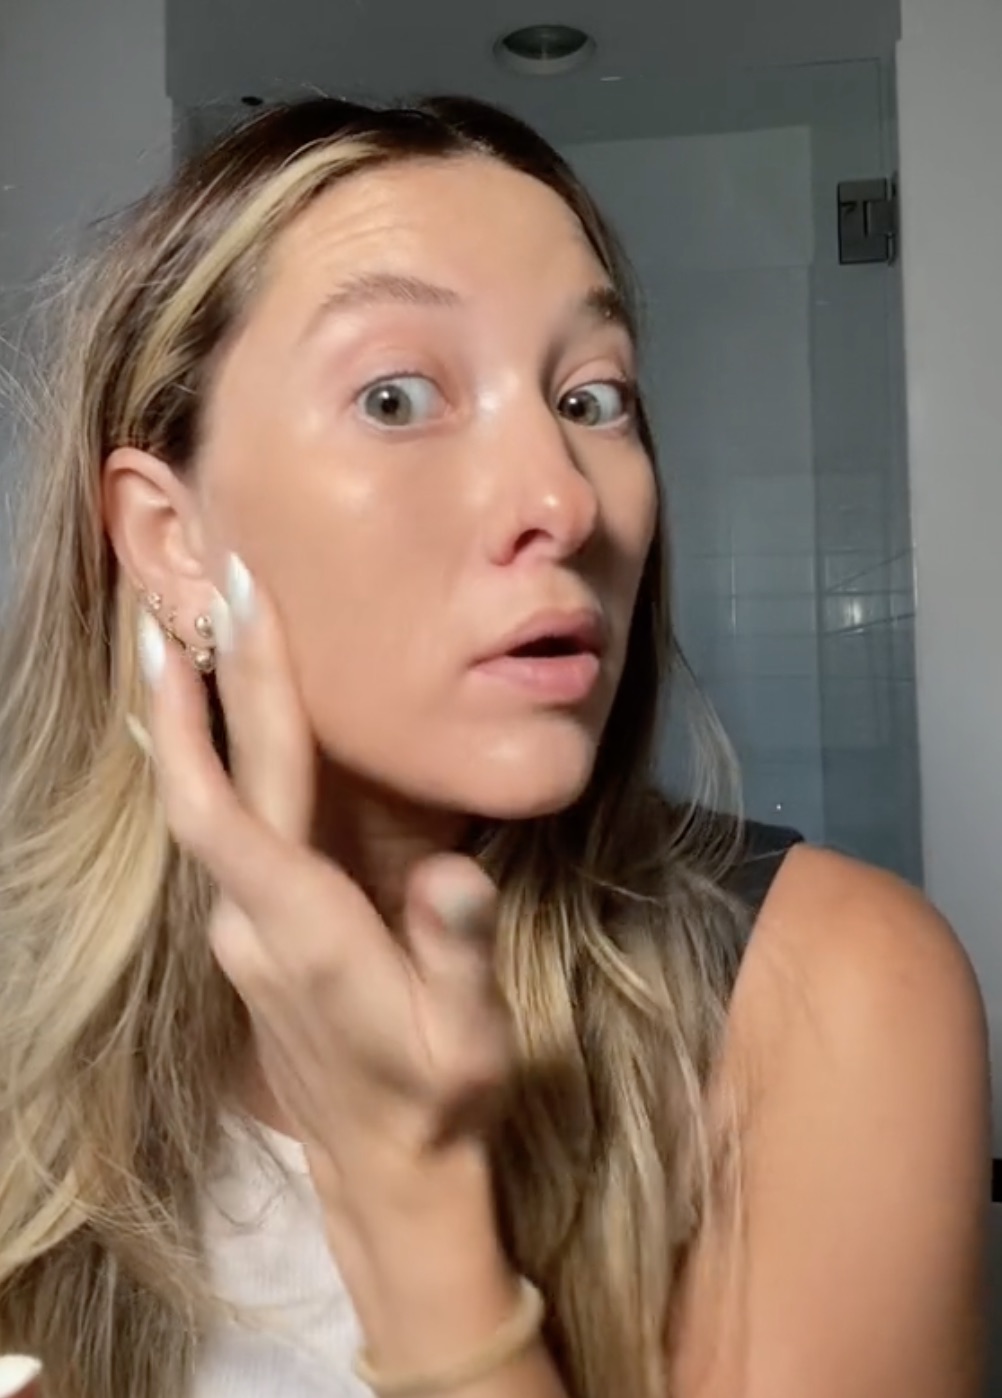 Die Make-up-Influencerin demonstrierte den Betrüger Seite an Seite auf ihrem Gesicht